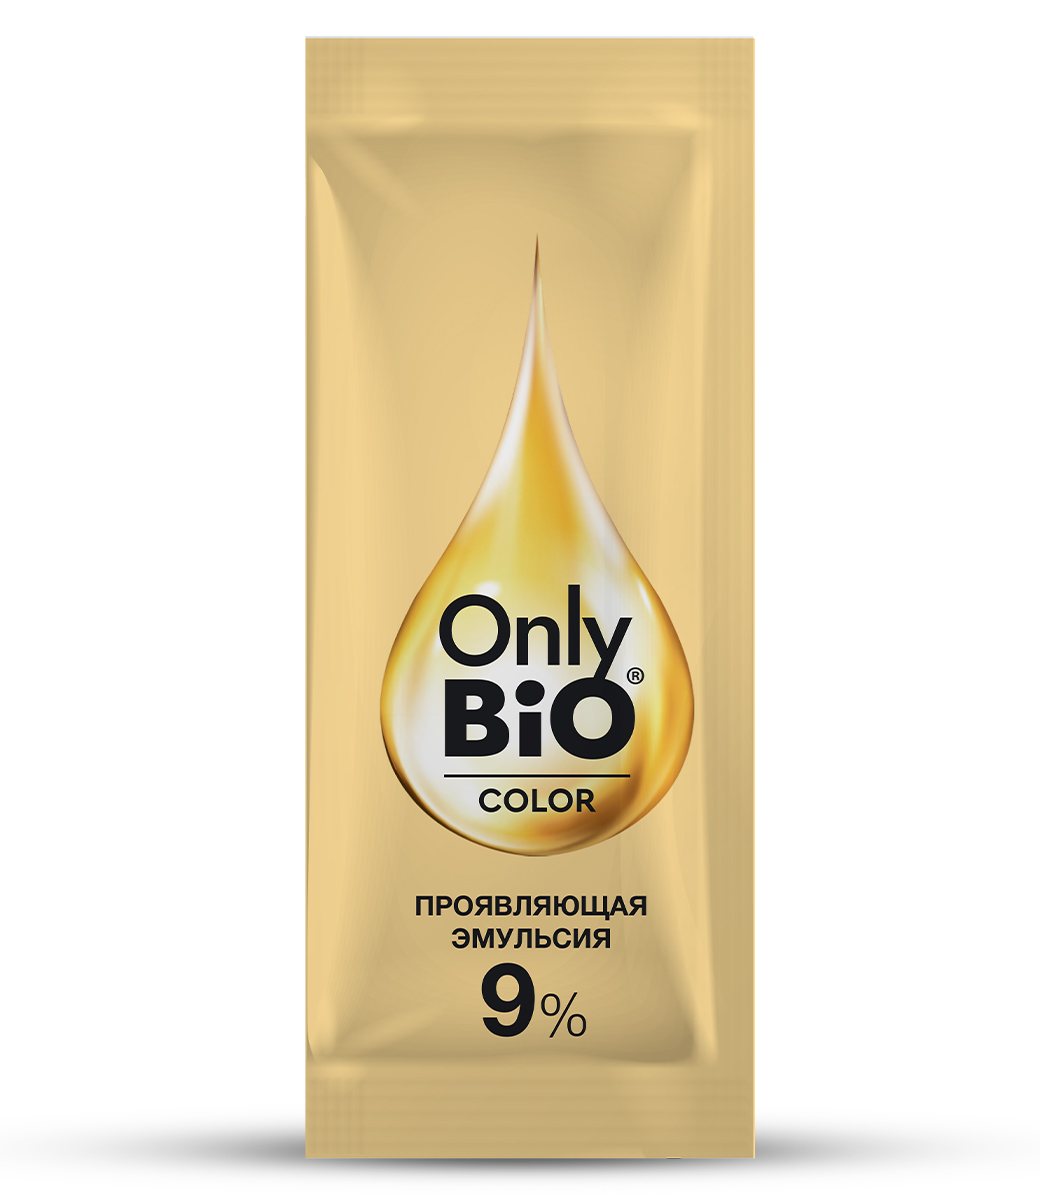 картинка Only Bio Стойкая крем-краска для волос Тон 5.62 Благородный бургунд